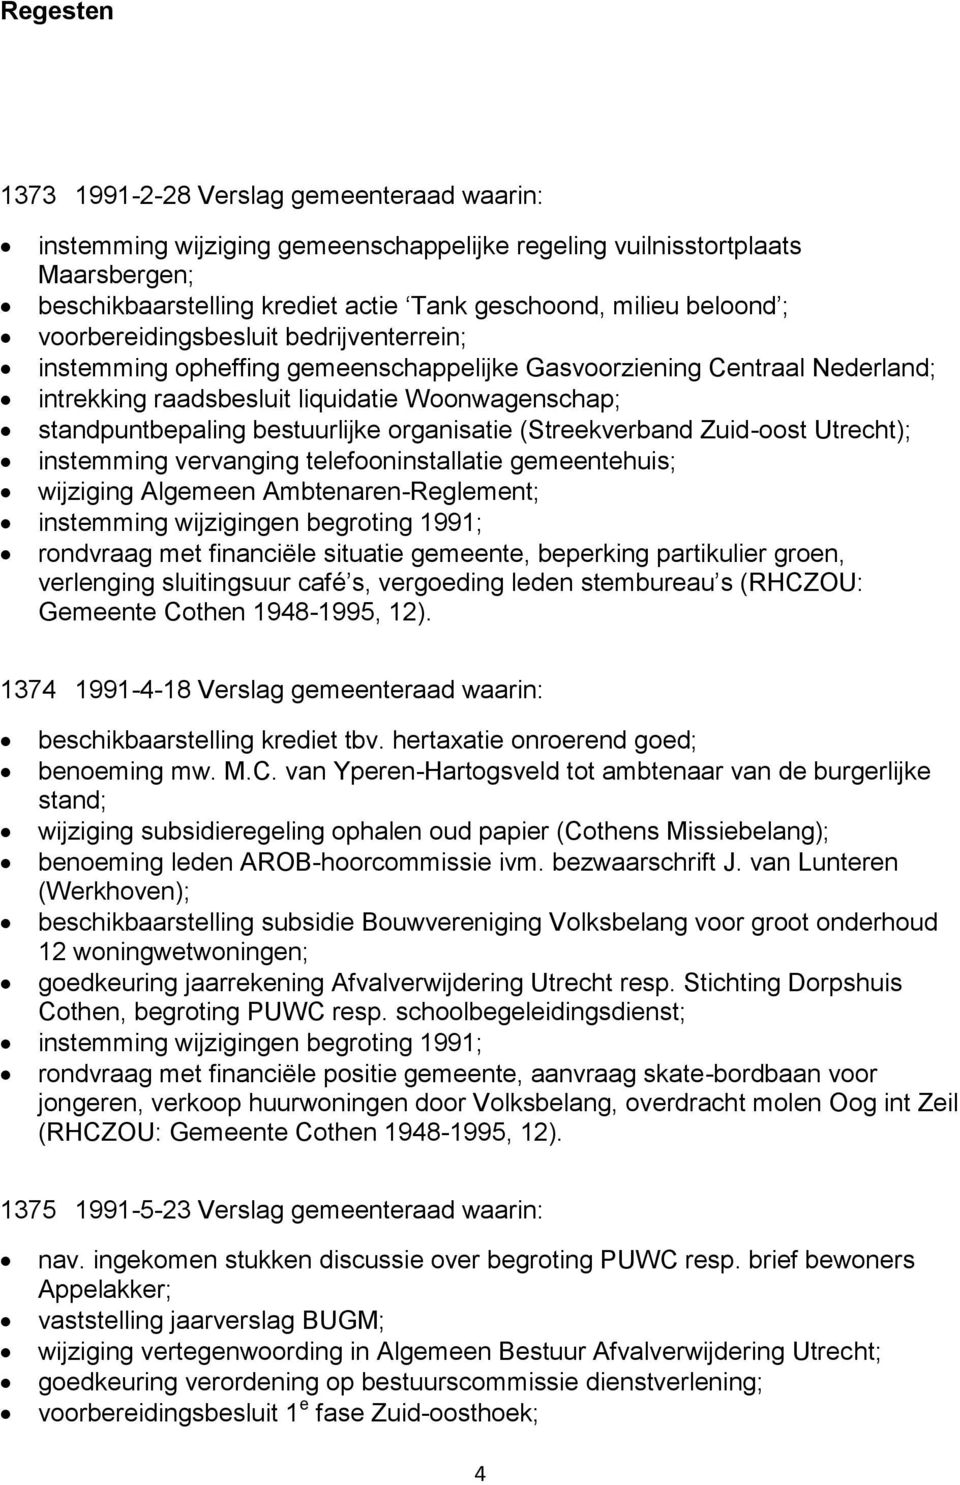 organisatie (Streekverband Zuid-oost Utrecht); instemming vervanging telefooninstallatie gemeentehuis; wijziging Algemeen Ambtenaren-Reglement; instemming wijzigingen begroting 1991; rondvraag met